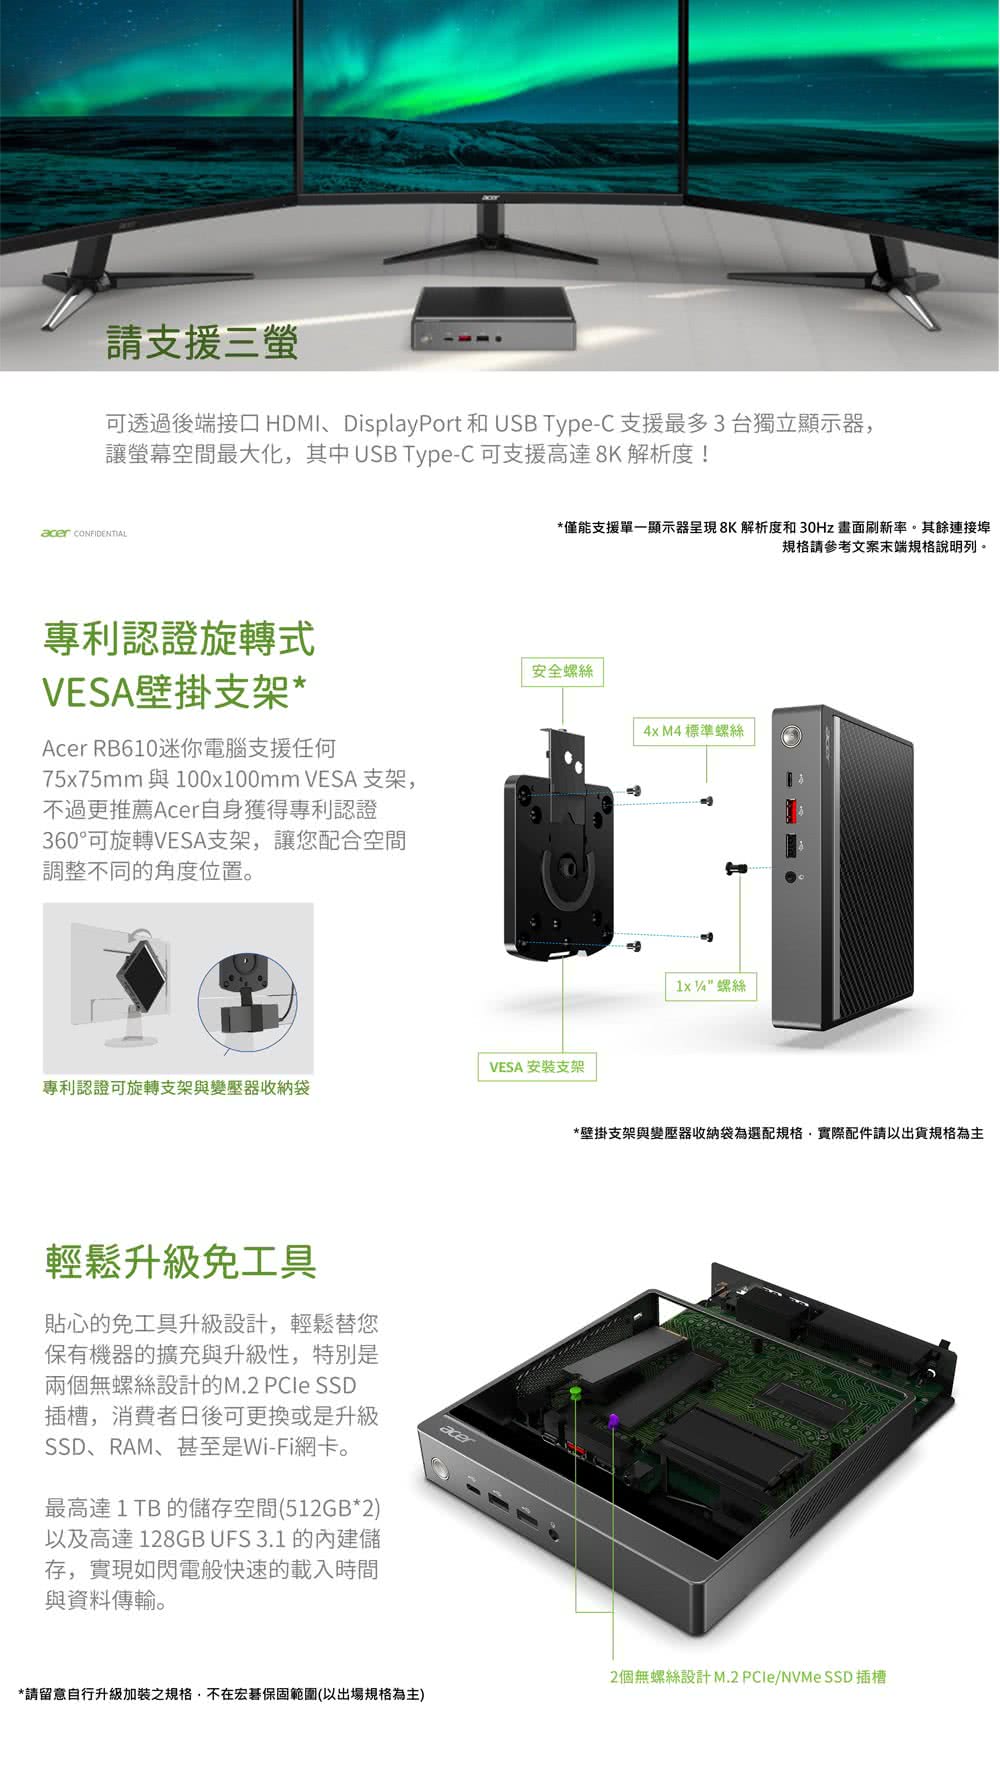 Acer 宏碁 羅技鍵鼠組★RB610迷你電腦(RB610/